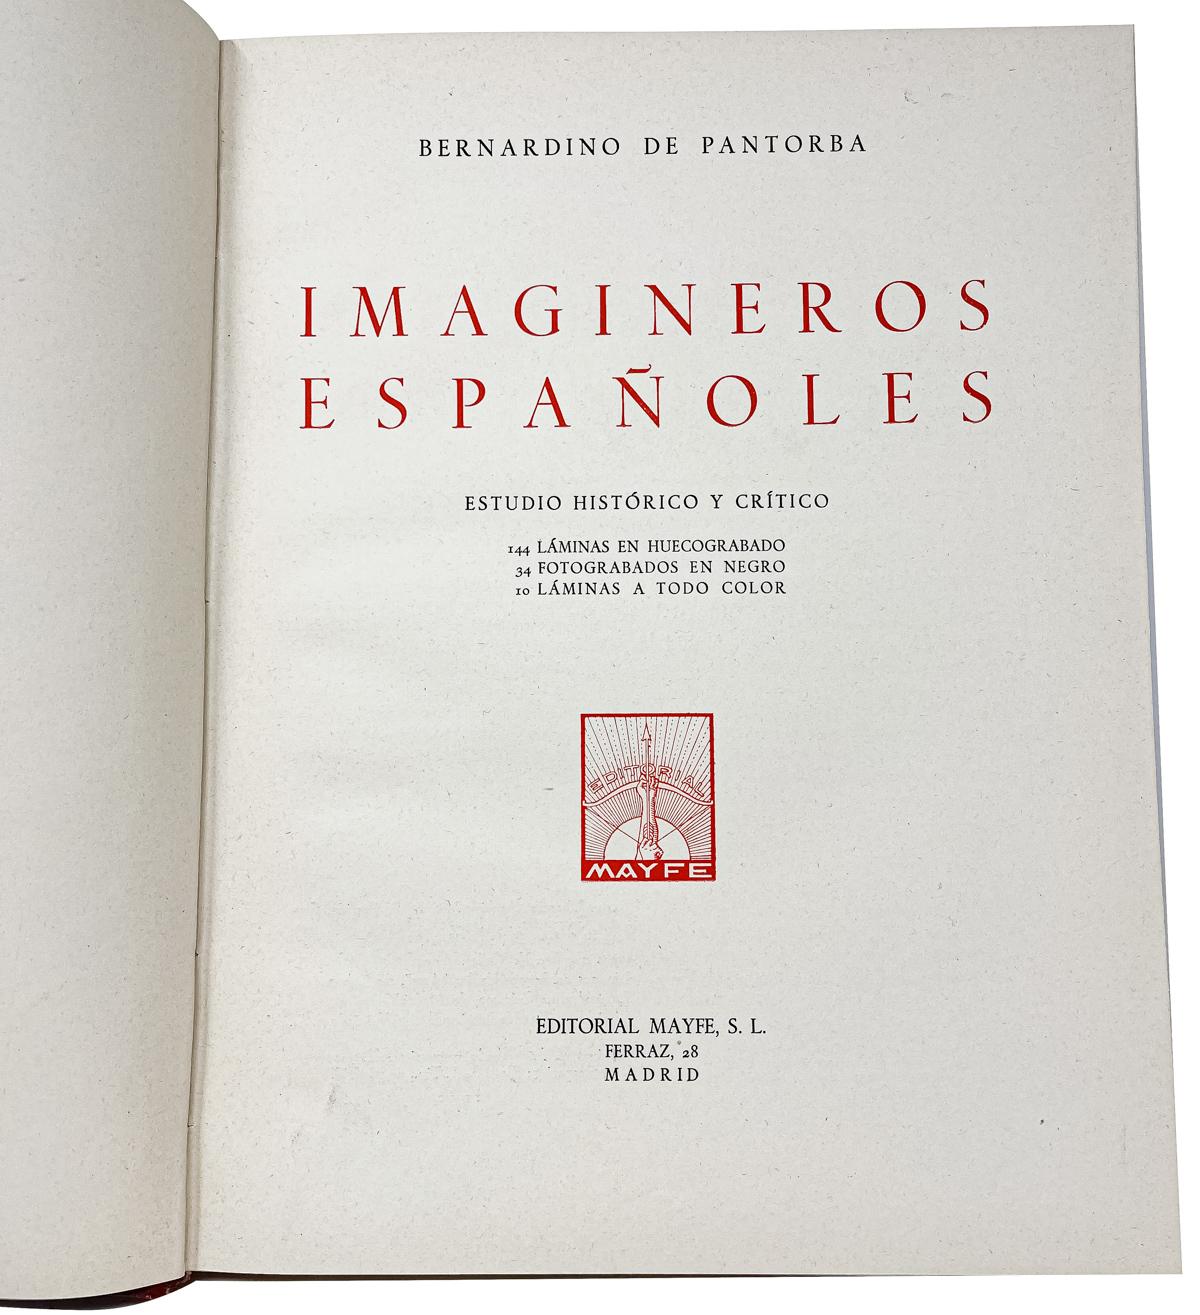 "IMAGINEROS ESPAÑOLES"